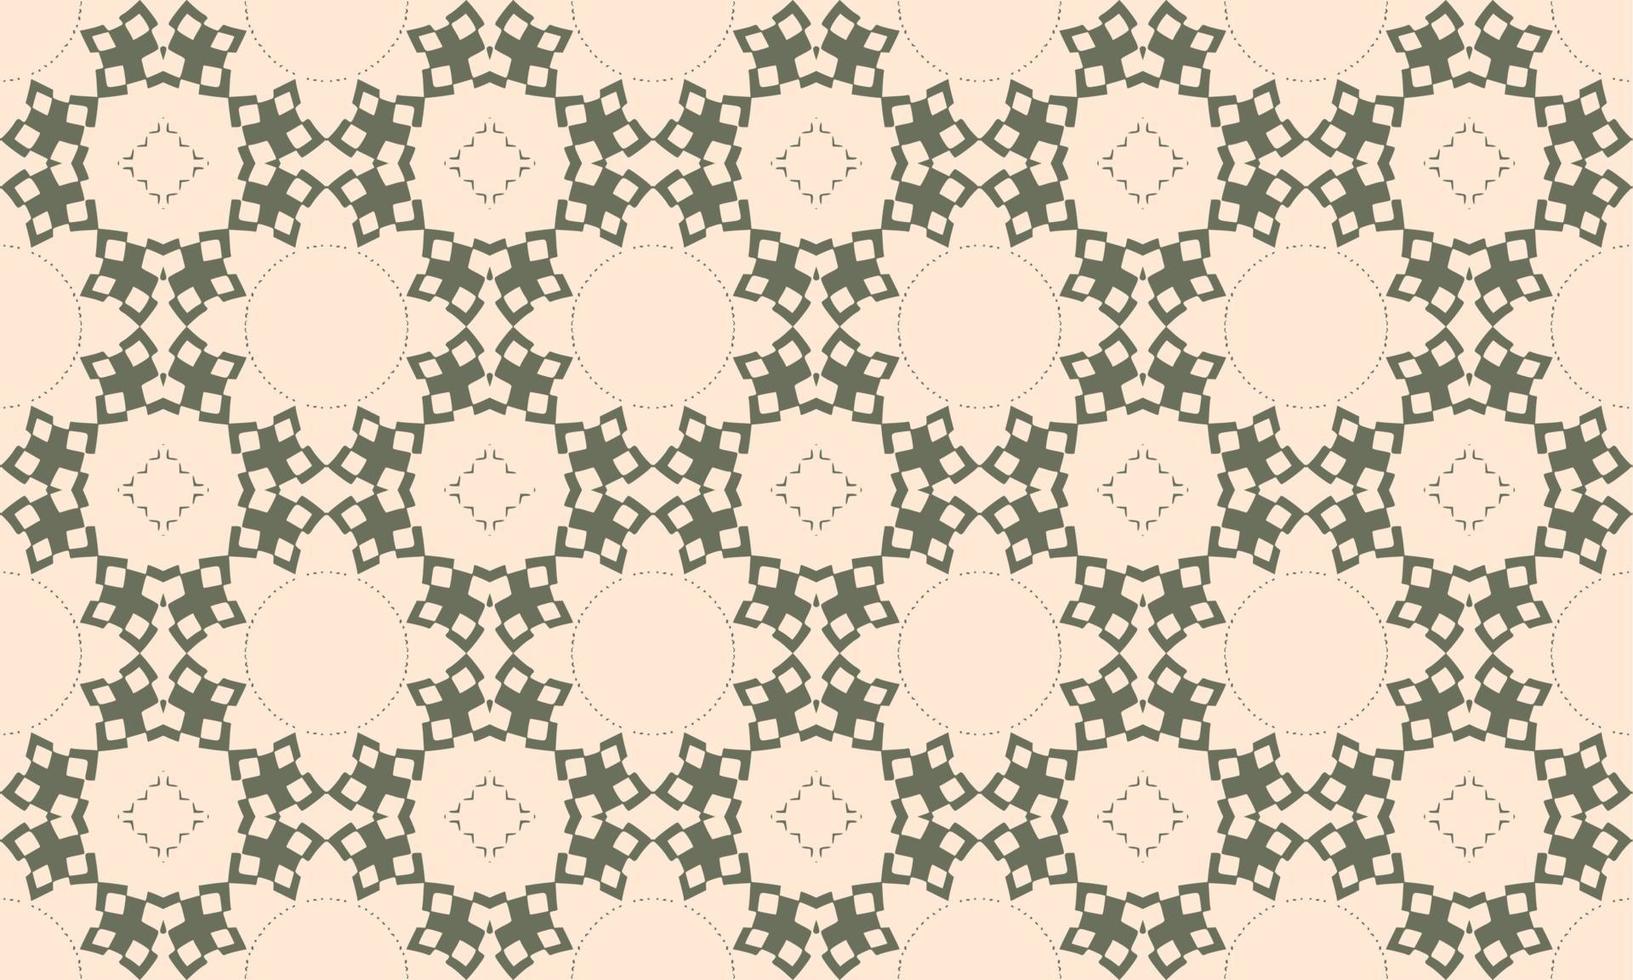 islamiskt geometriskt mönster vektor